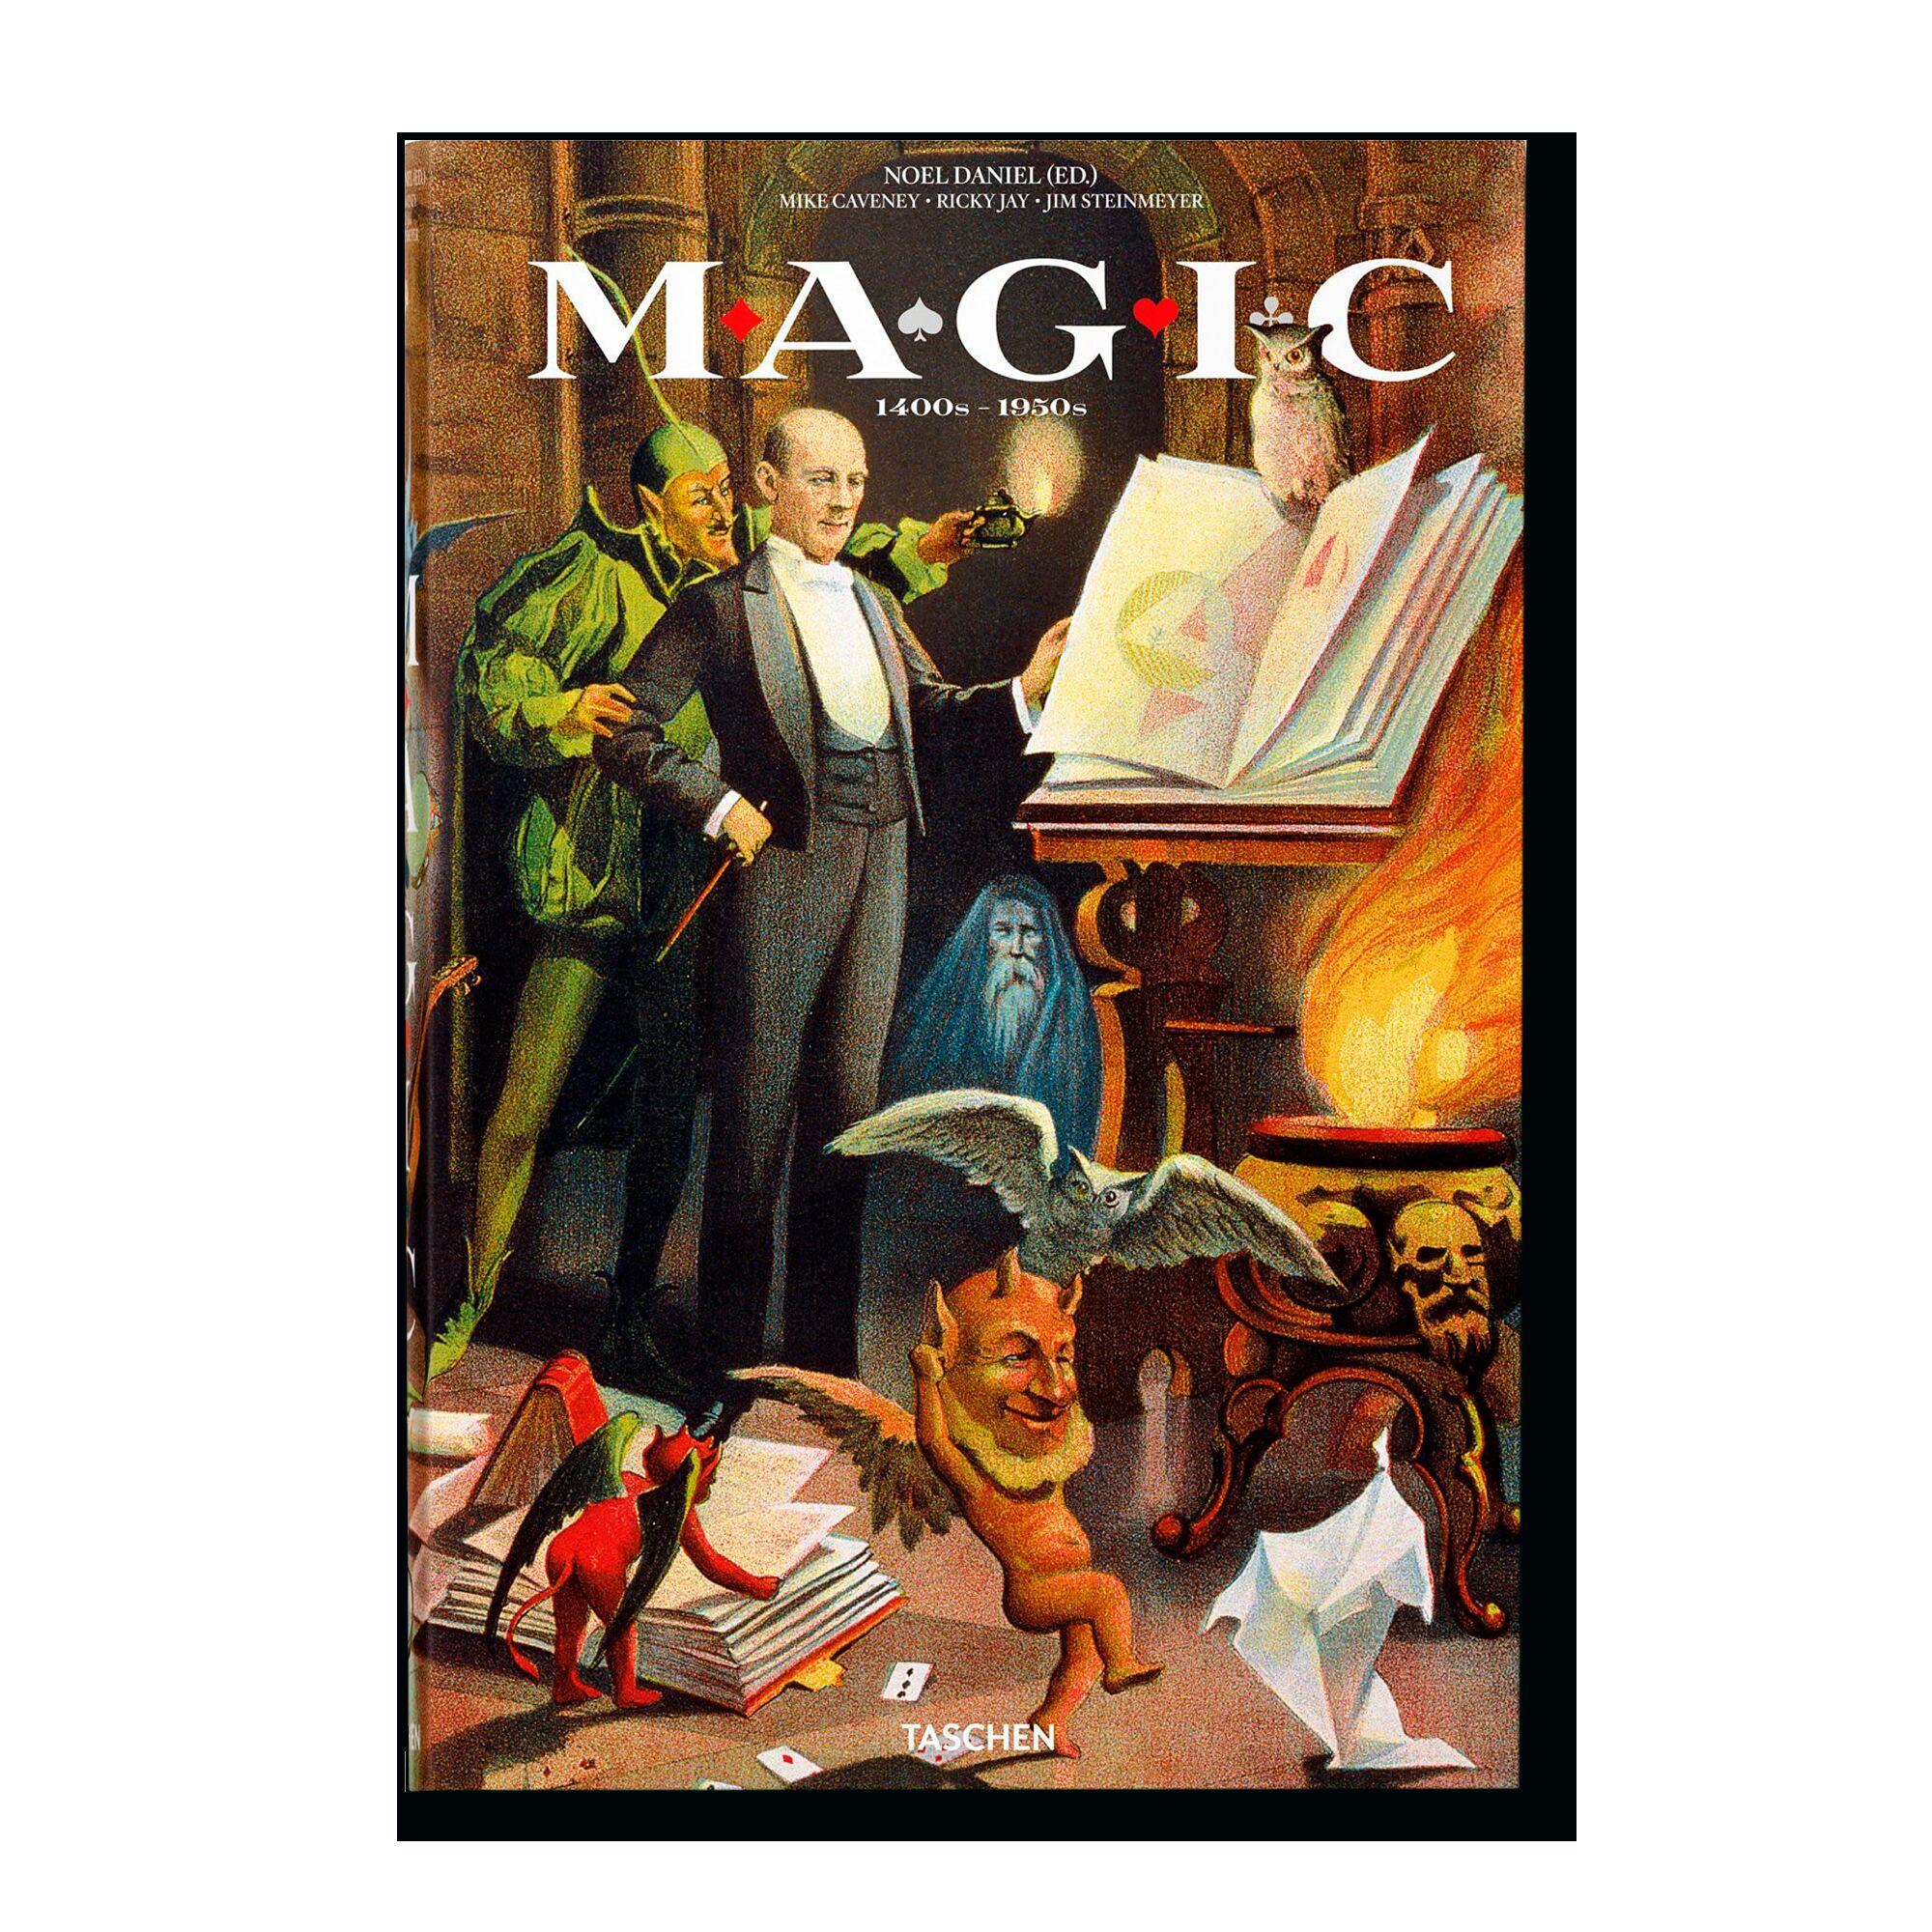 Magic 1400s-1950s